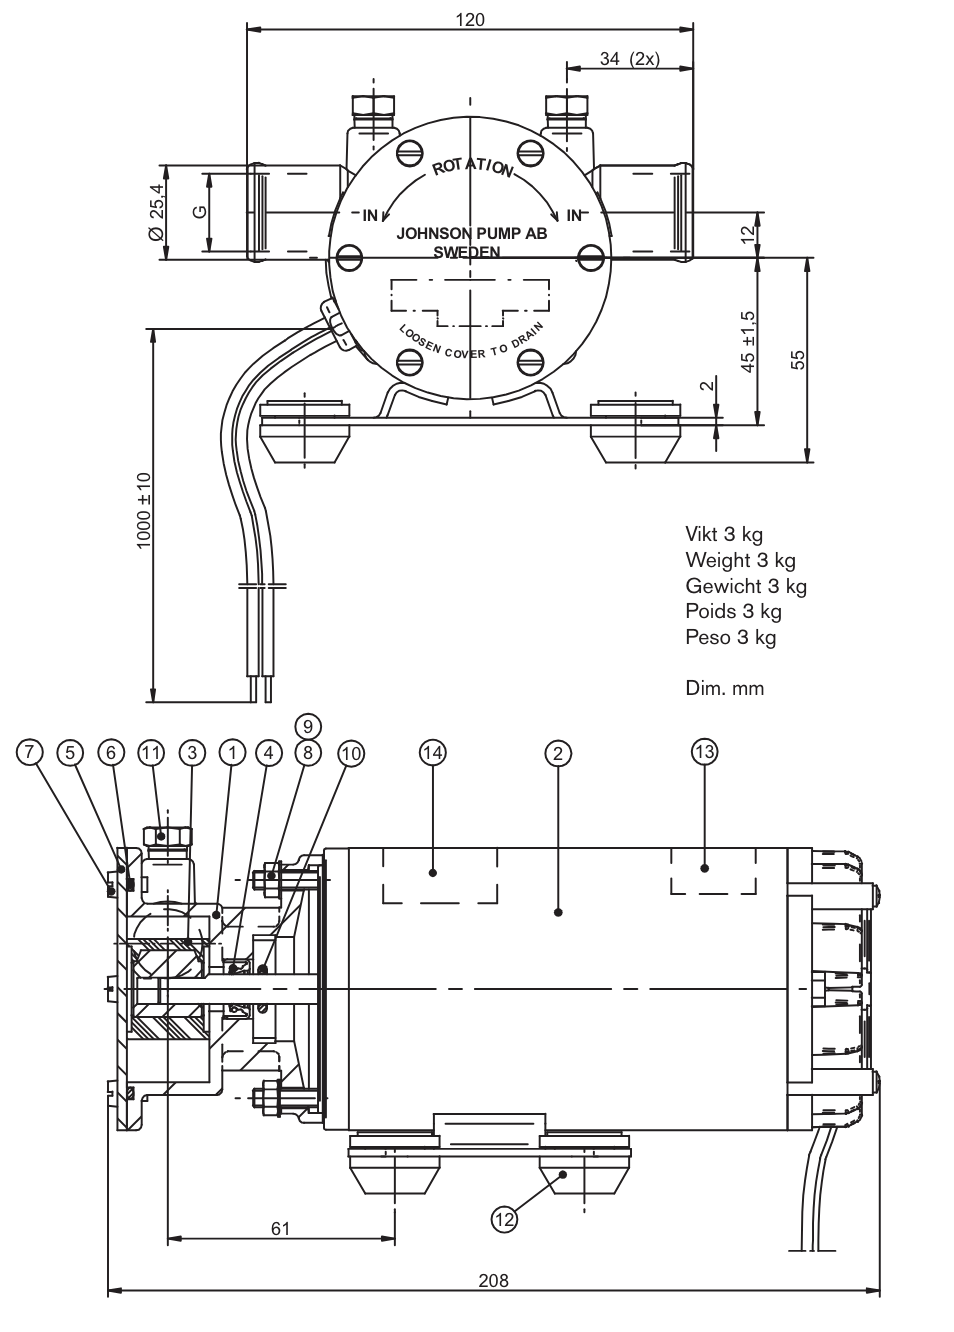 JOHNSON Impeller Pump Oil Change F4B-1907 24V